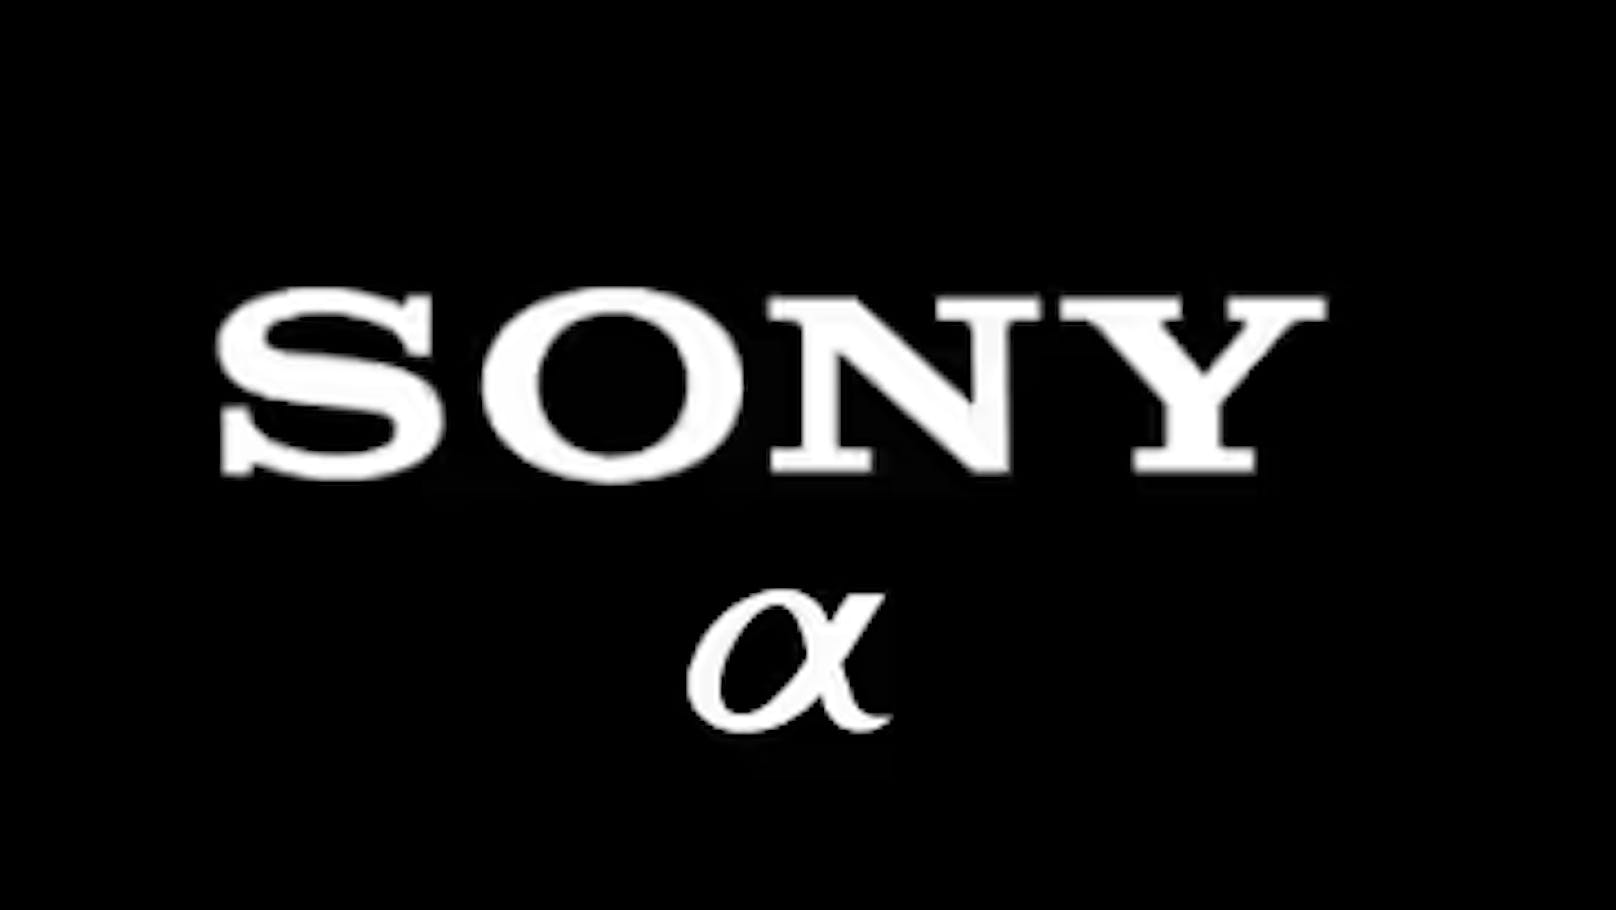 Sony liefert lang erwartete Firmware-Updates einschließlich C2PA-Konformität und Gewährleistung der Echtheit von Bildern.